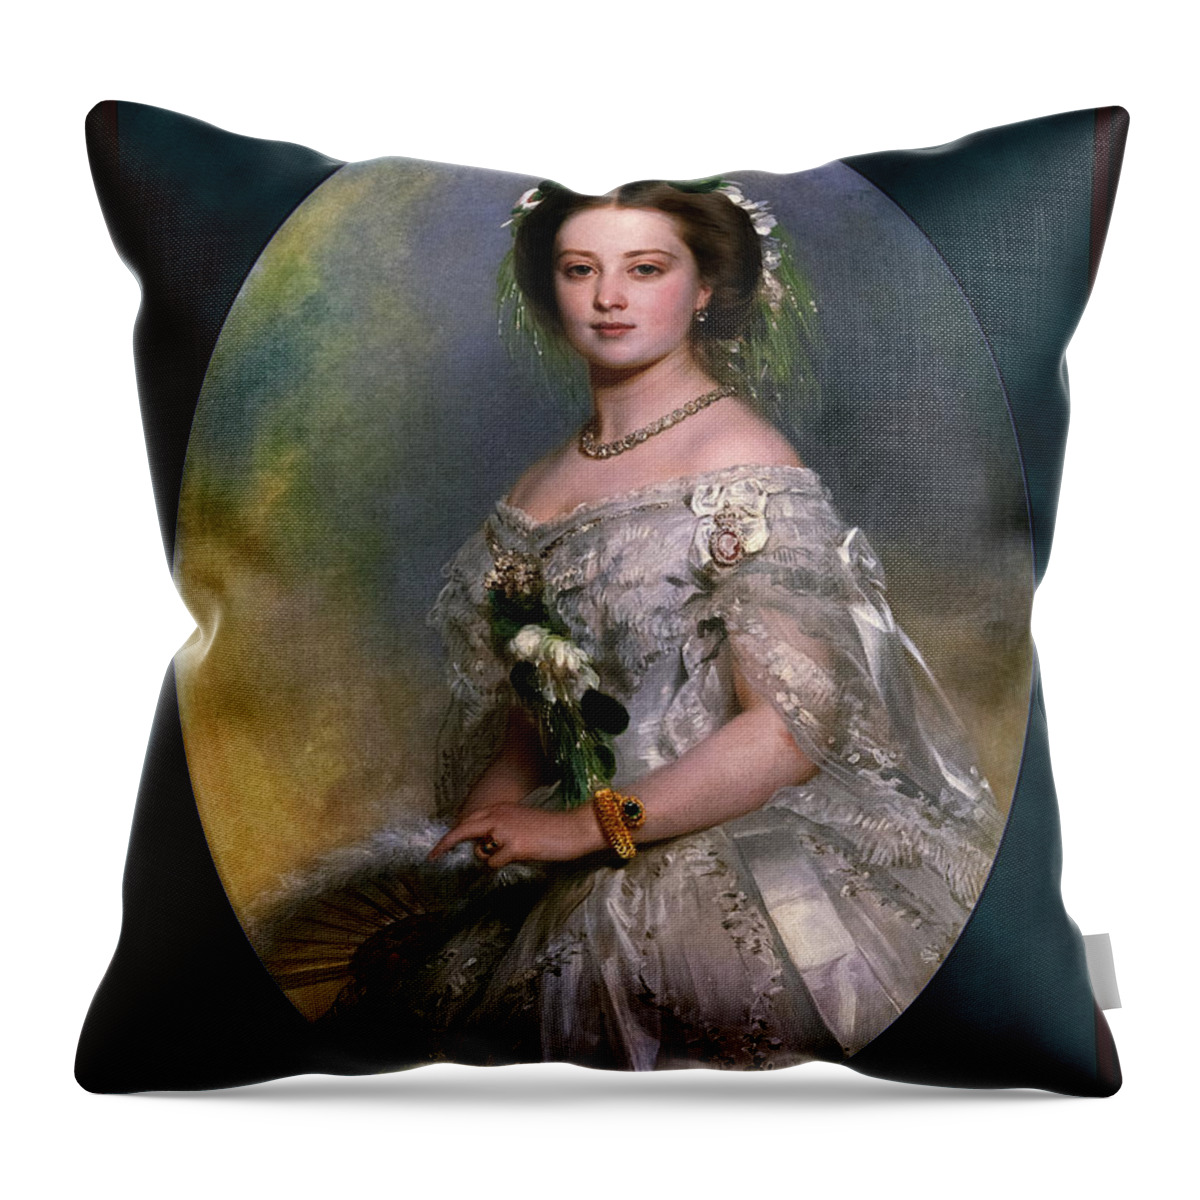 Victoria Princess Royal Throw Pillow featuring the digital art Victoria Princess Royal by Franz Xaver Winterhalter by Rolando Burbon